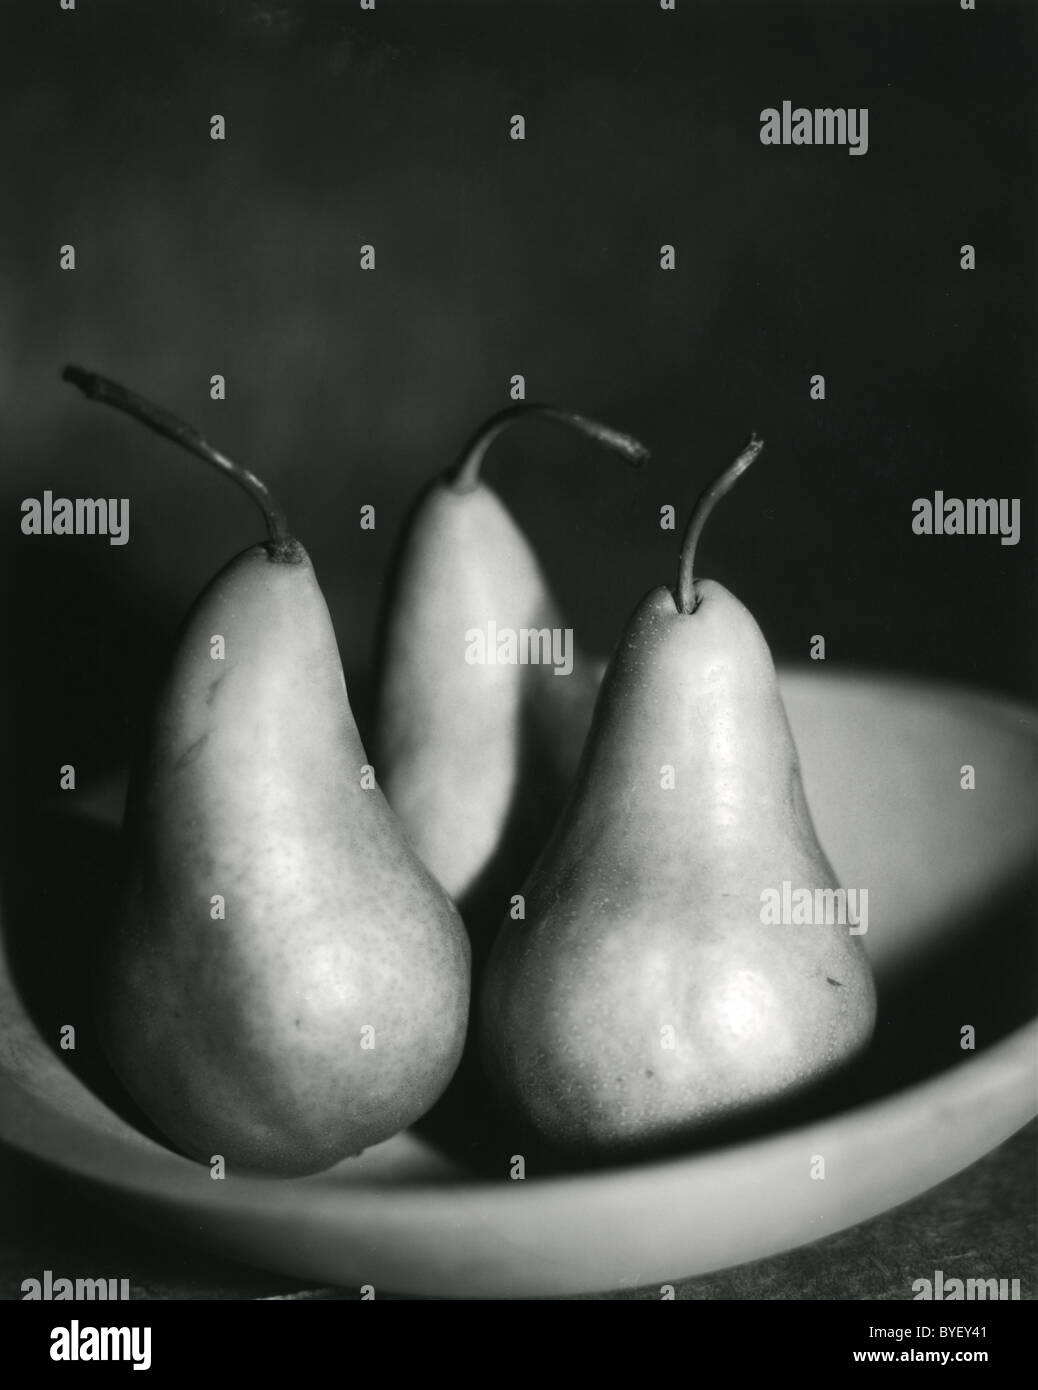 schwarz / weiß Foto von drei Birnen in einer Holzschale Stockfoto